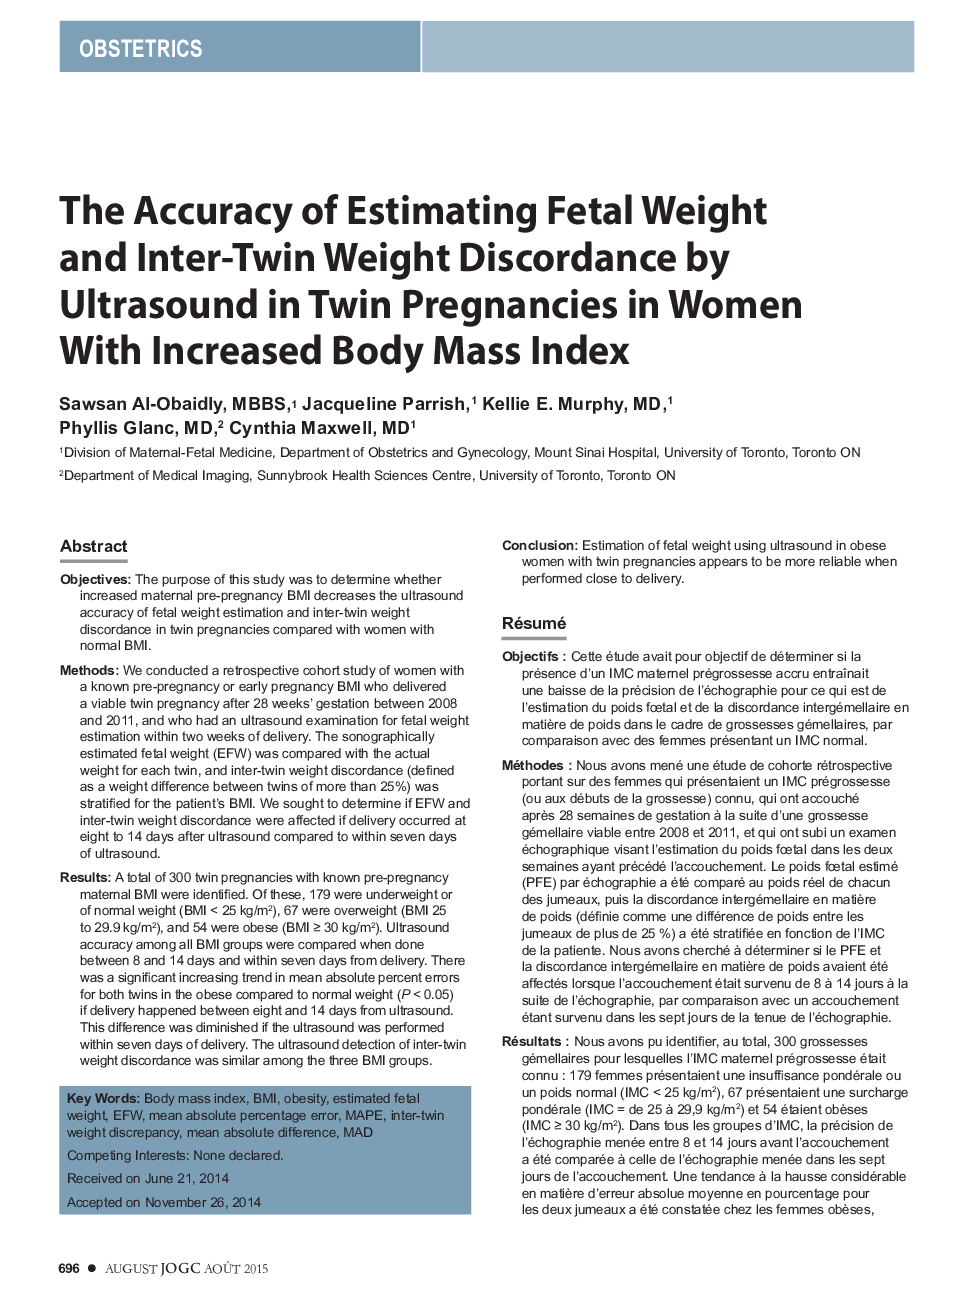 دقت برآورد وزن جنینی و اختلاف وزن دوقلو با سونوگرافی در بارداری دوقلو در زنان با افزایش شاخص توده بدنی 